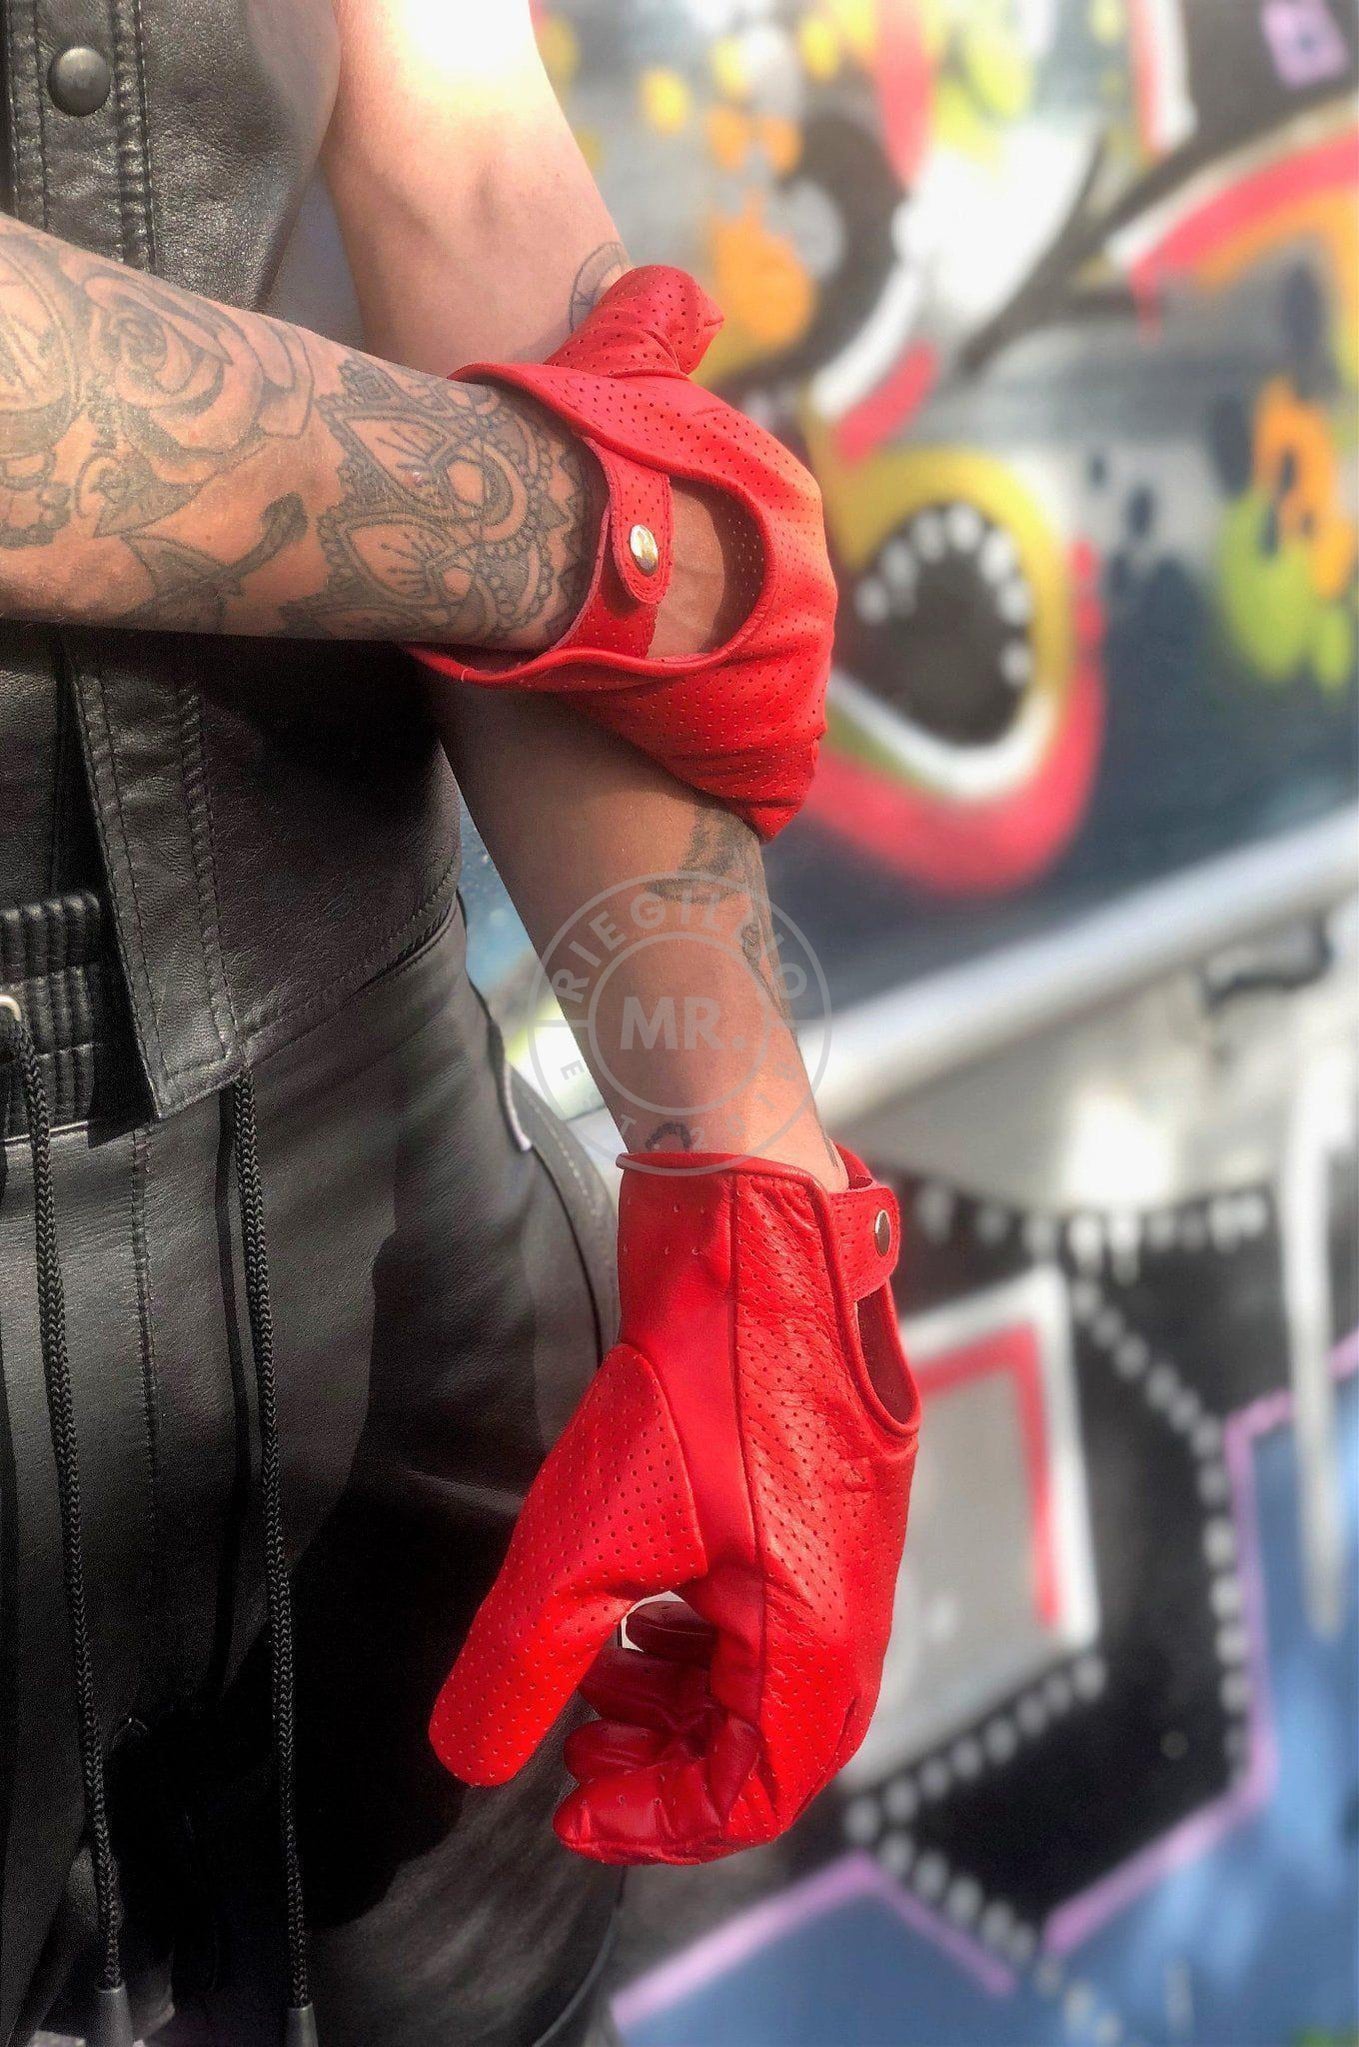 Leather gloves red-at MR. Riegillio